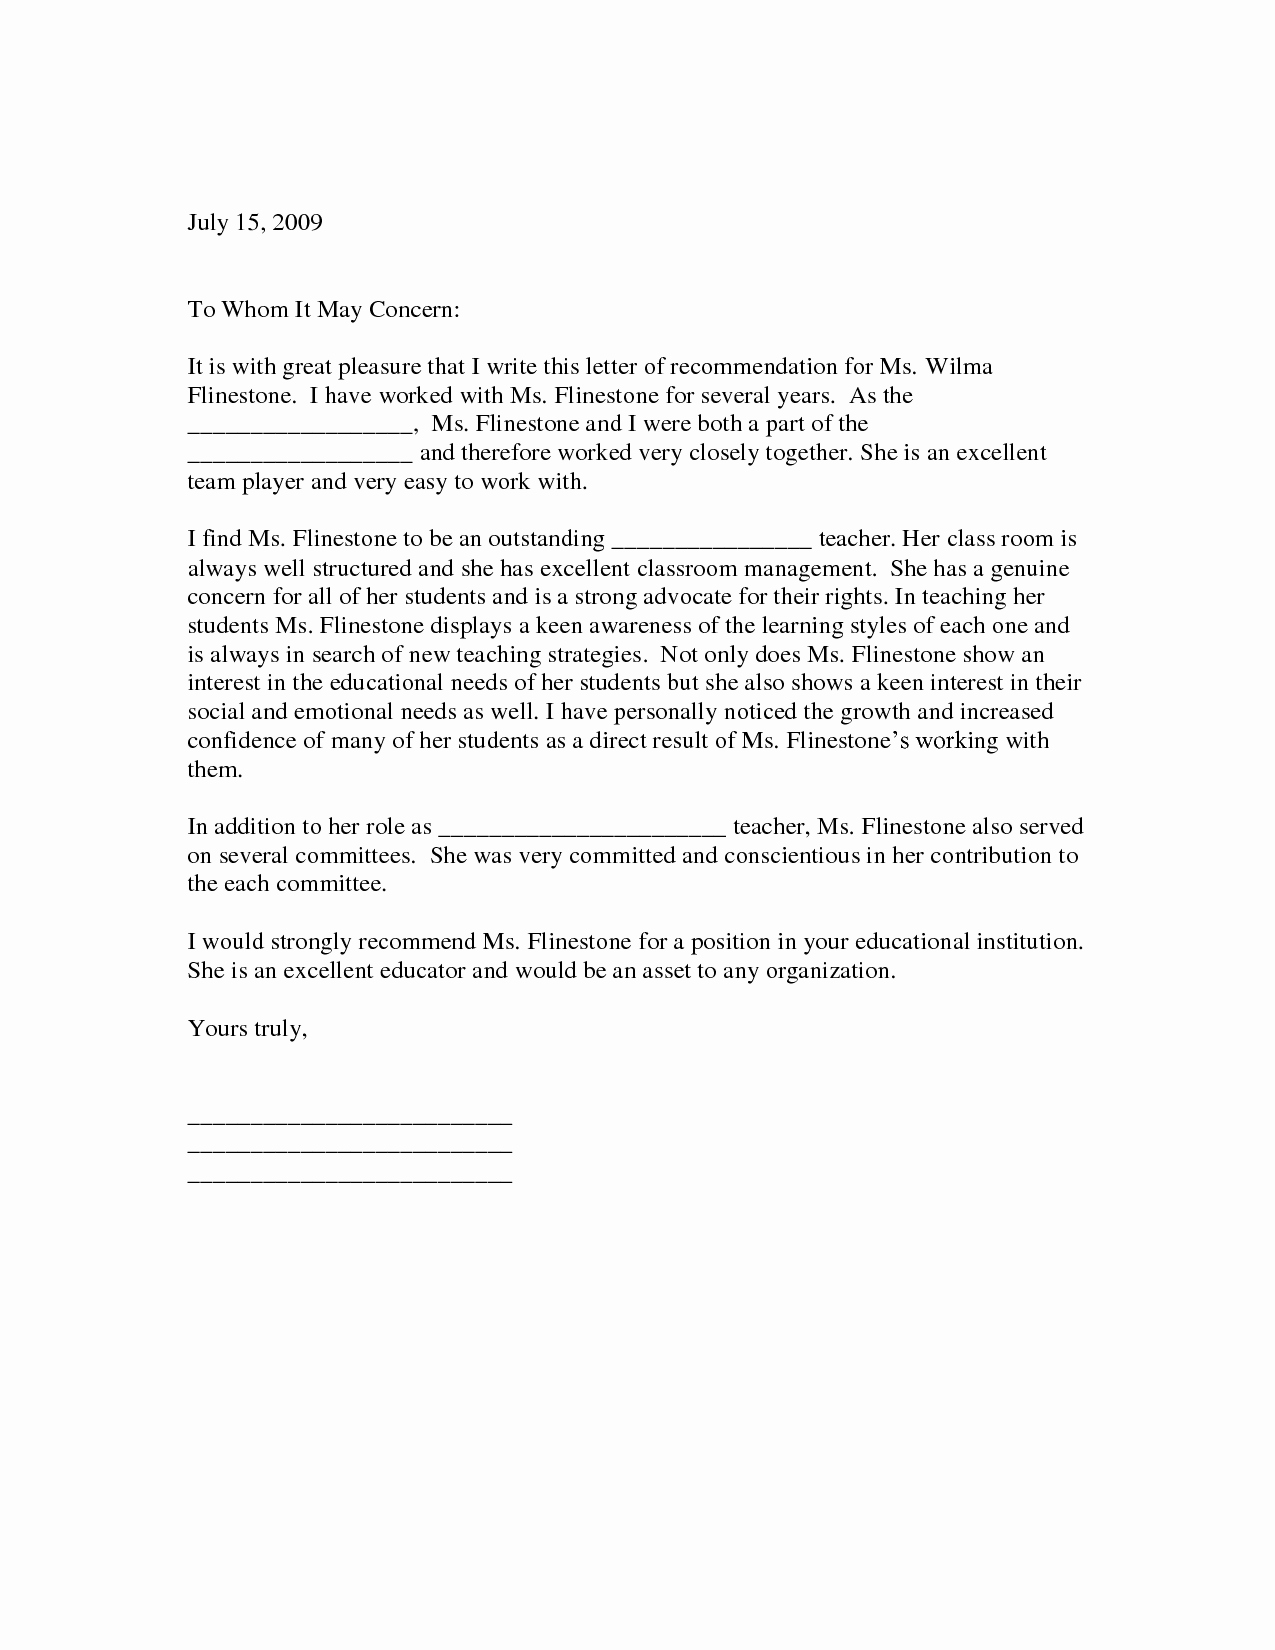 Teacher Letter Of Recommendation Sample Lovely Sample Letter Of Re Mendation for Teacher